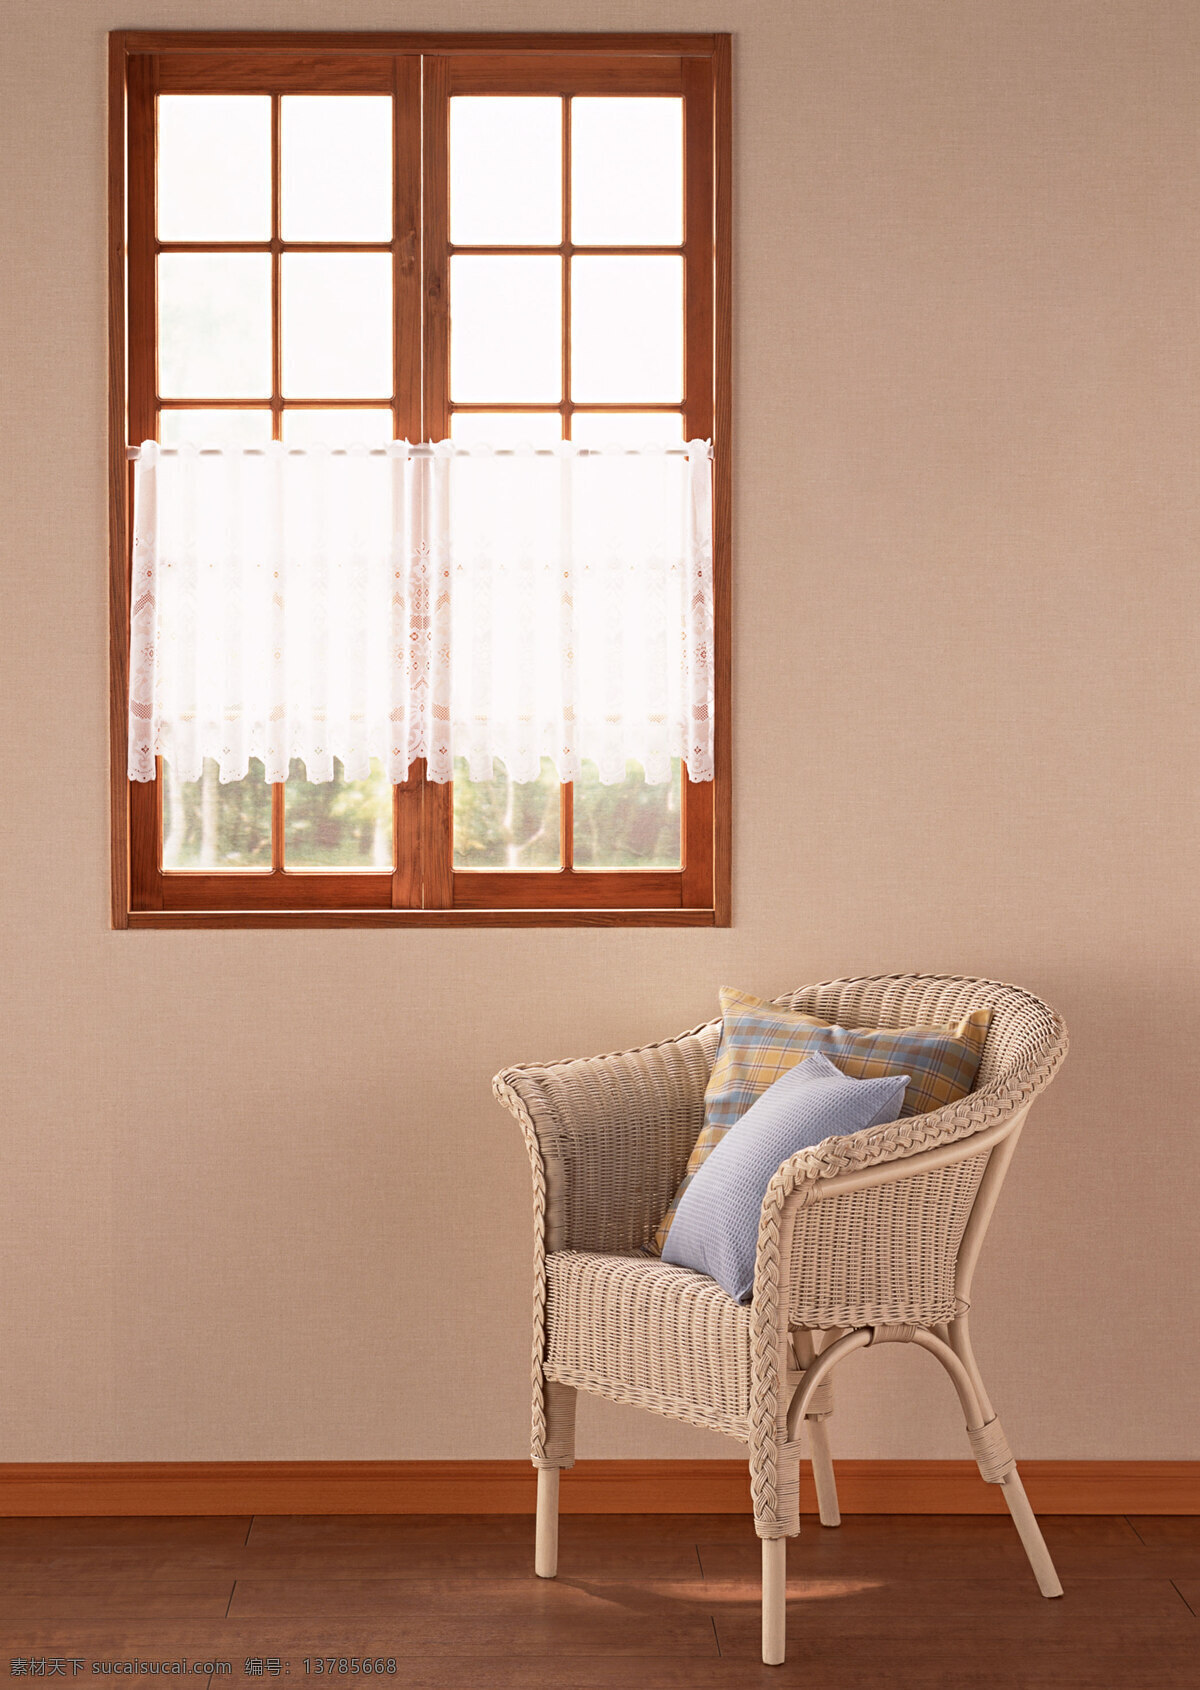 木窗 室内 木窗户 藤椅 靠垫 建筑园林 室内摄影 摄影图库